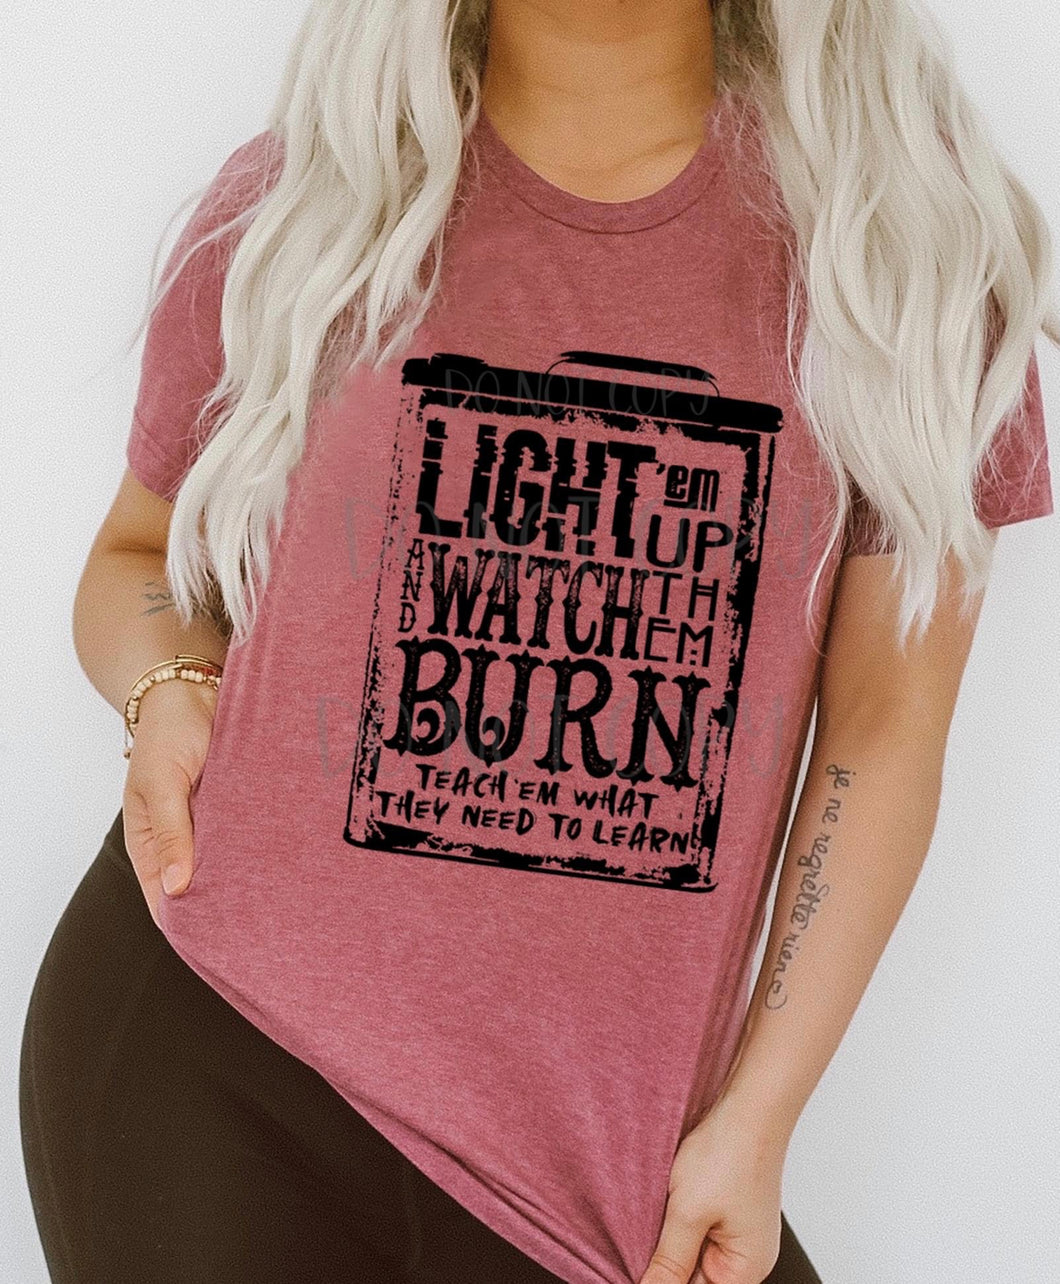 Light em up watch em burn